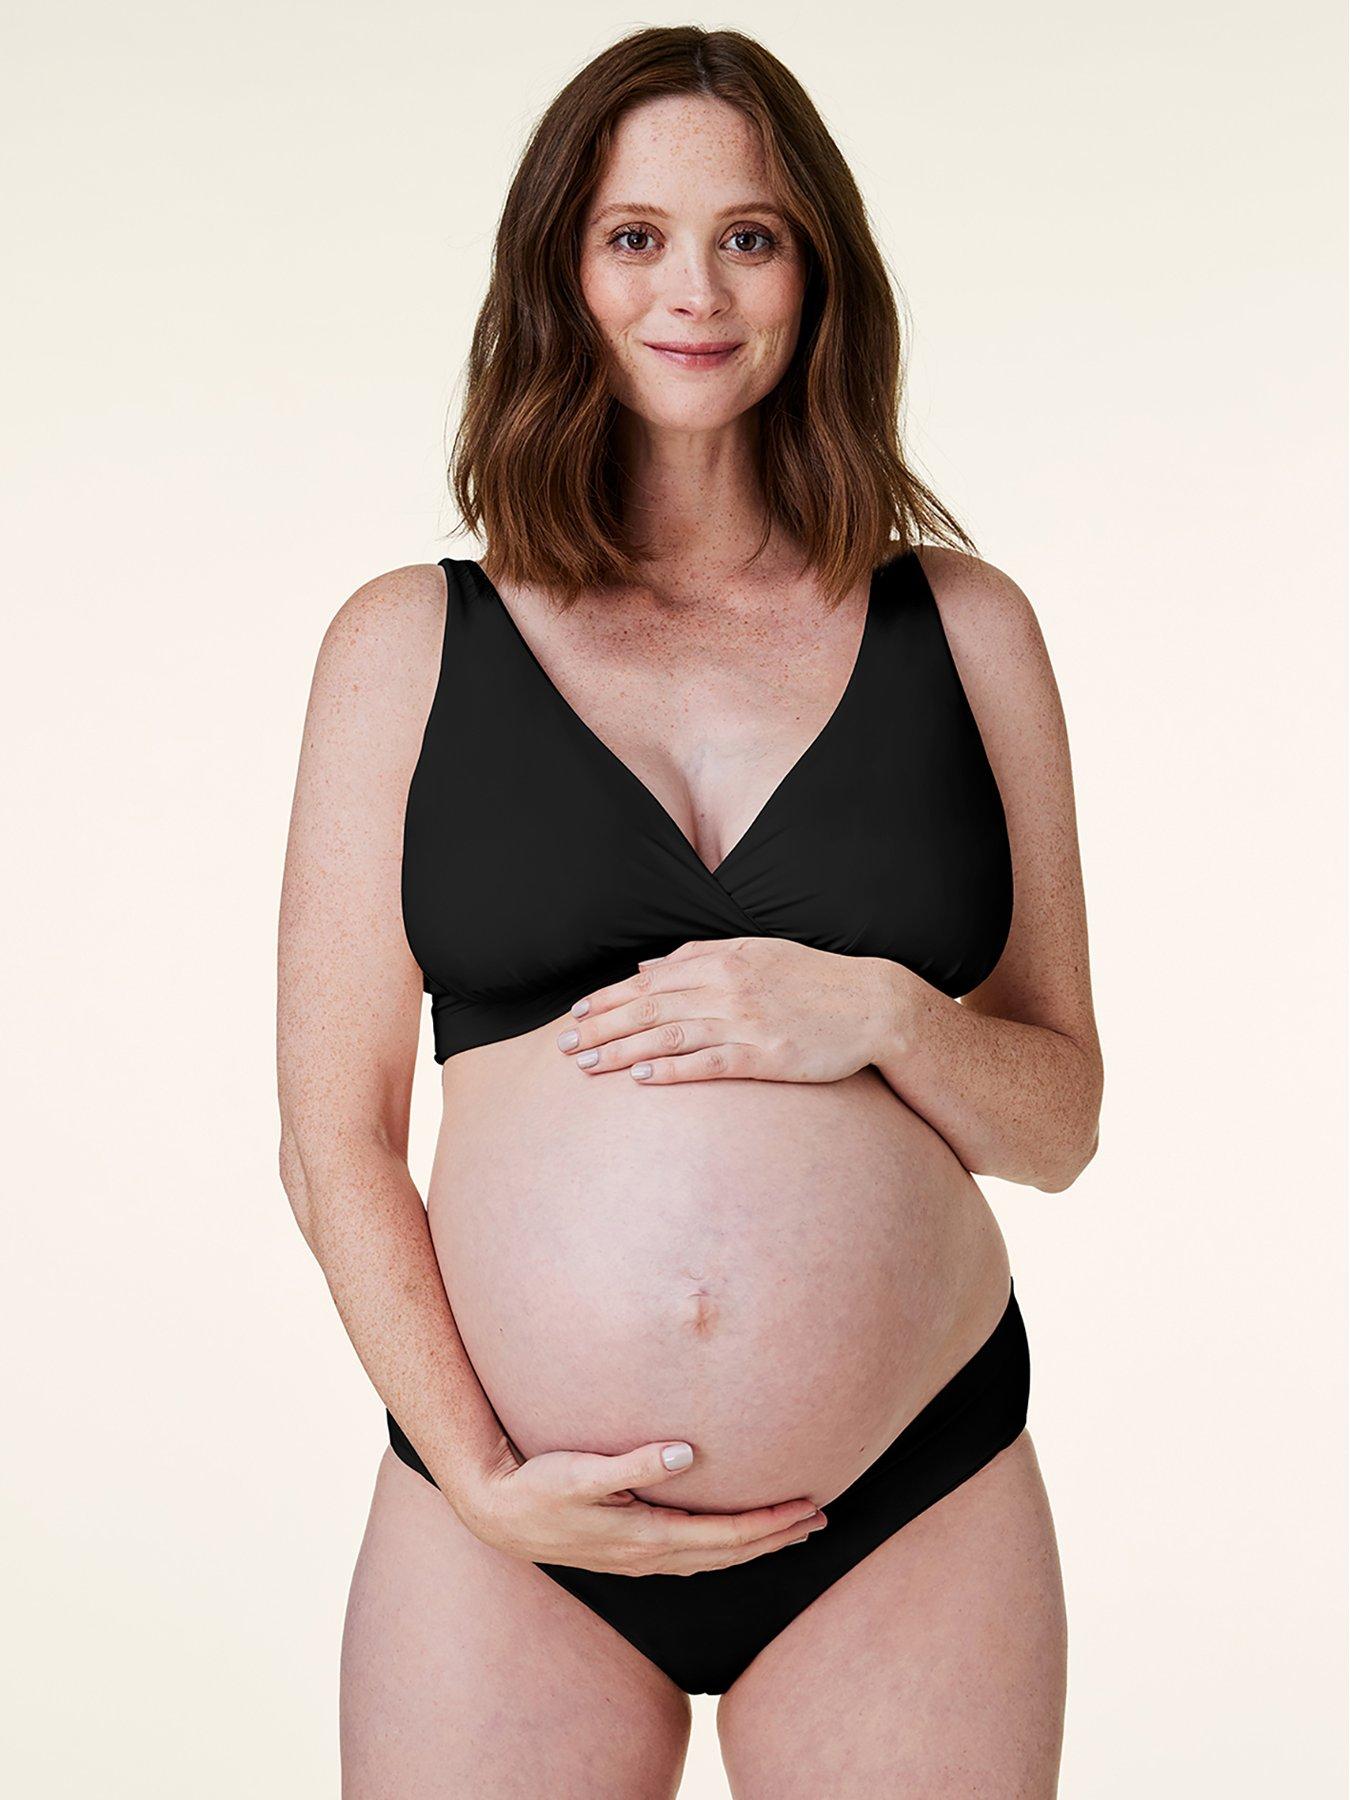 ESSSUT Underwear Womens Women Feeding Nursing Pregnant Maternity